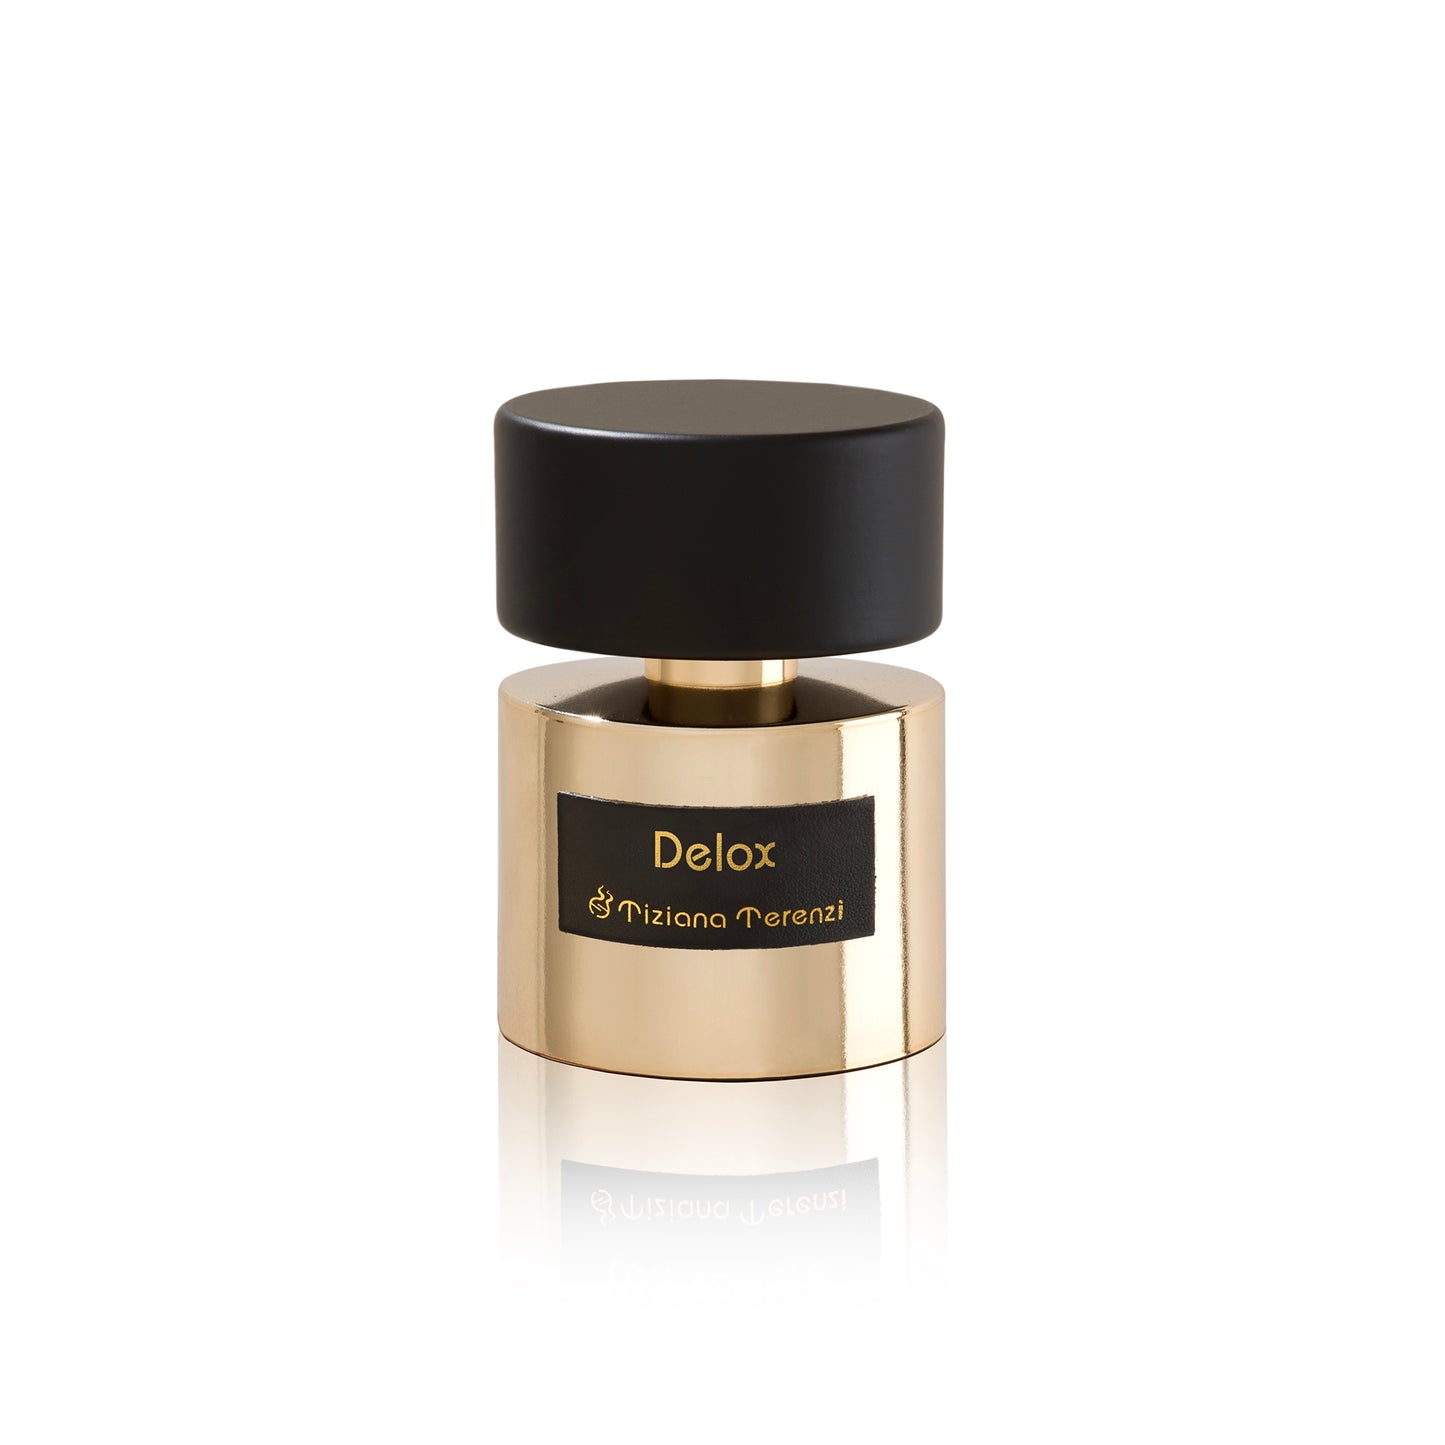 Delox 3.4oz Extrait de Parfum